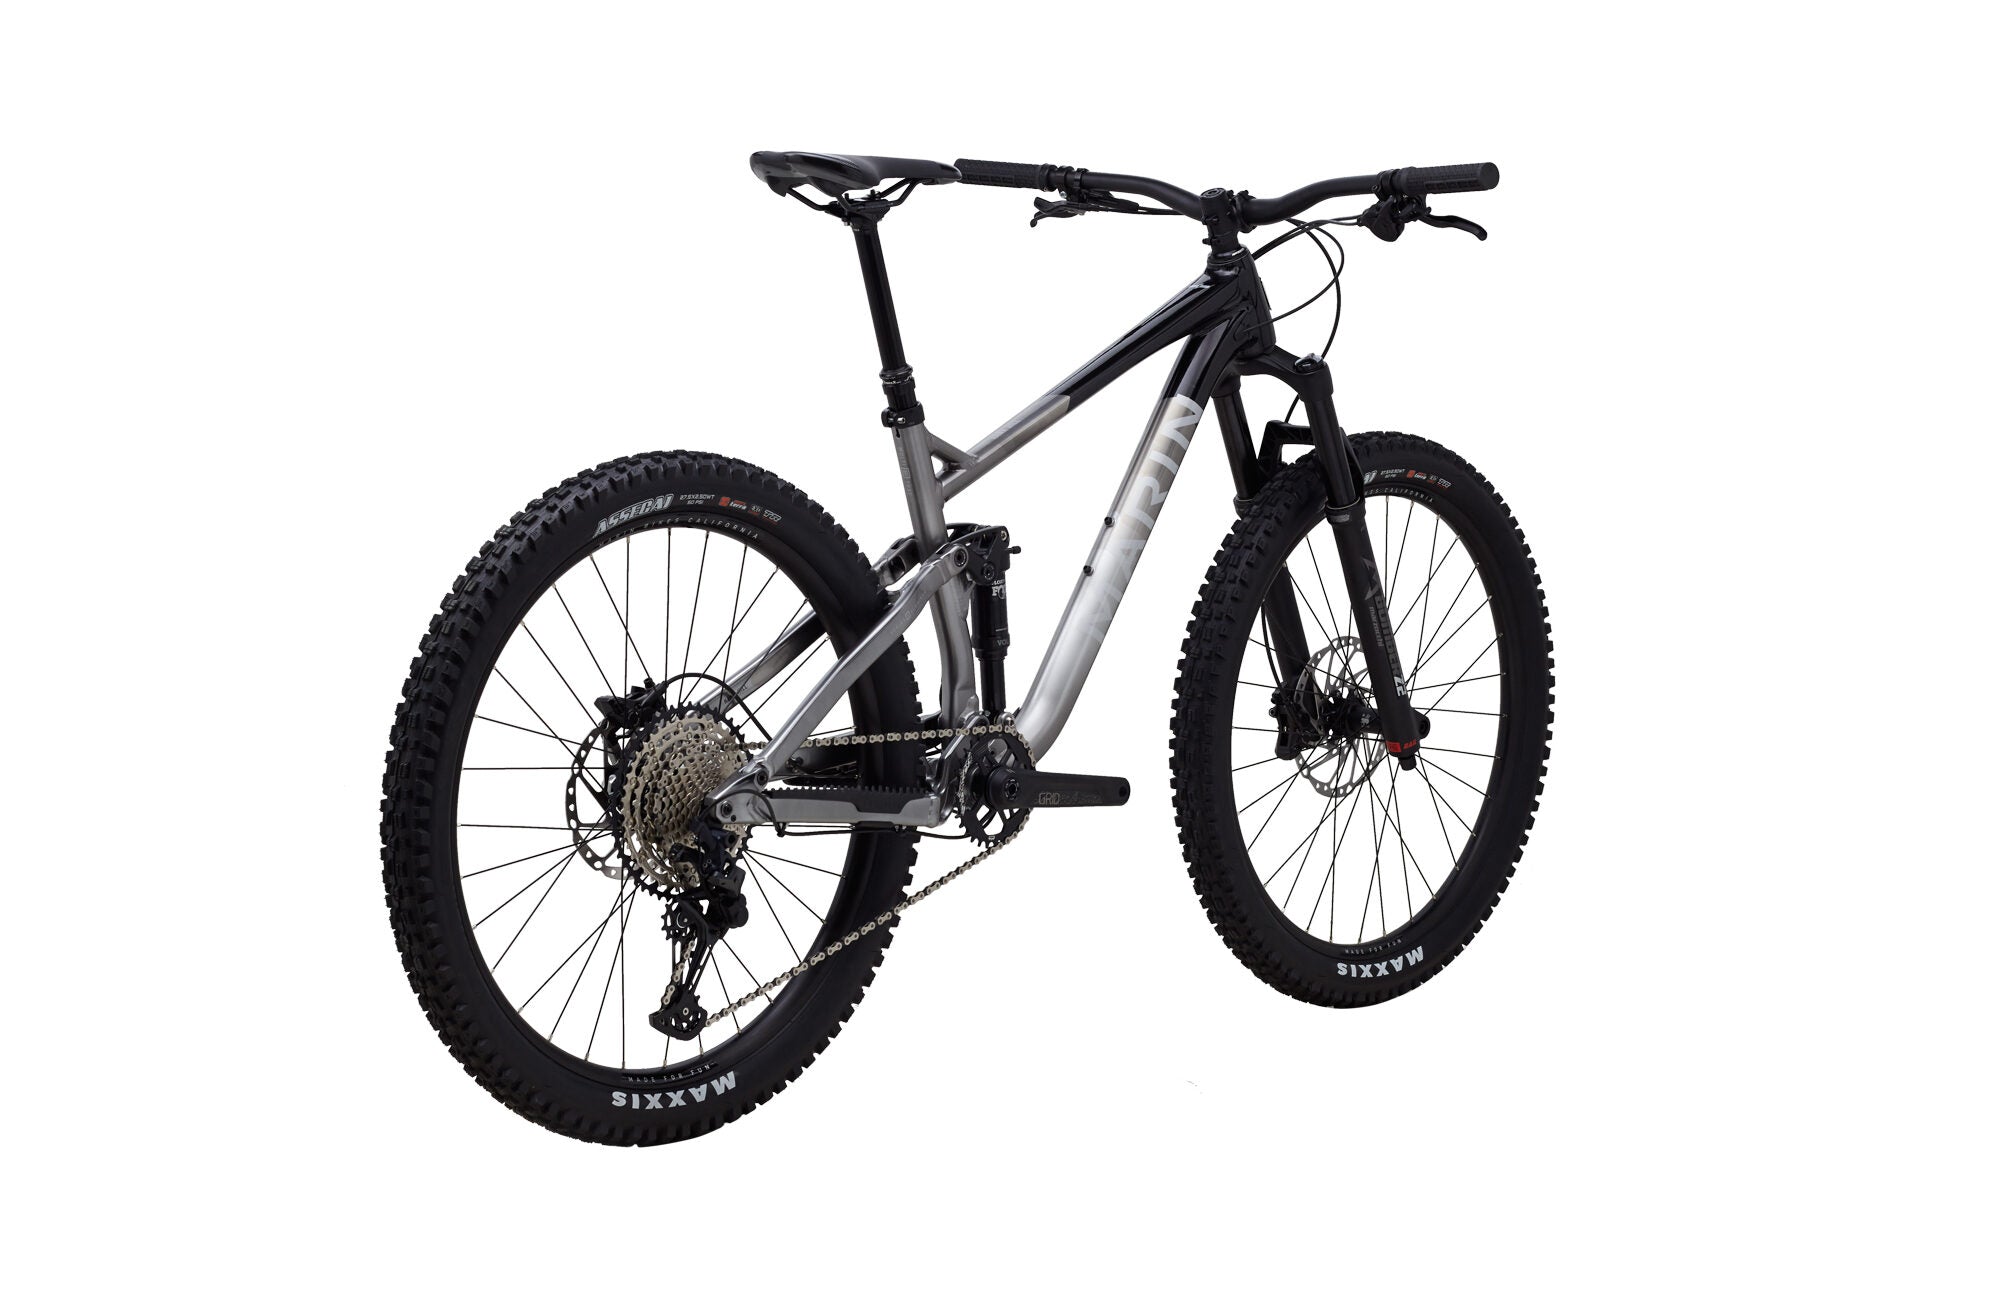 Bicicleta de Montaña Doble Suspensión Rift Zone 3 27.5" (2022) Marin Bikes